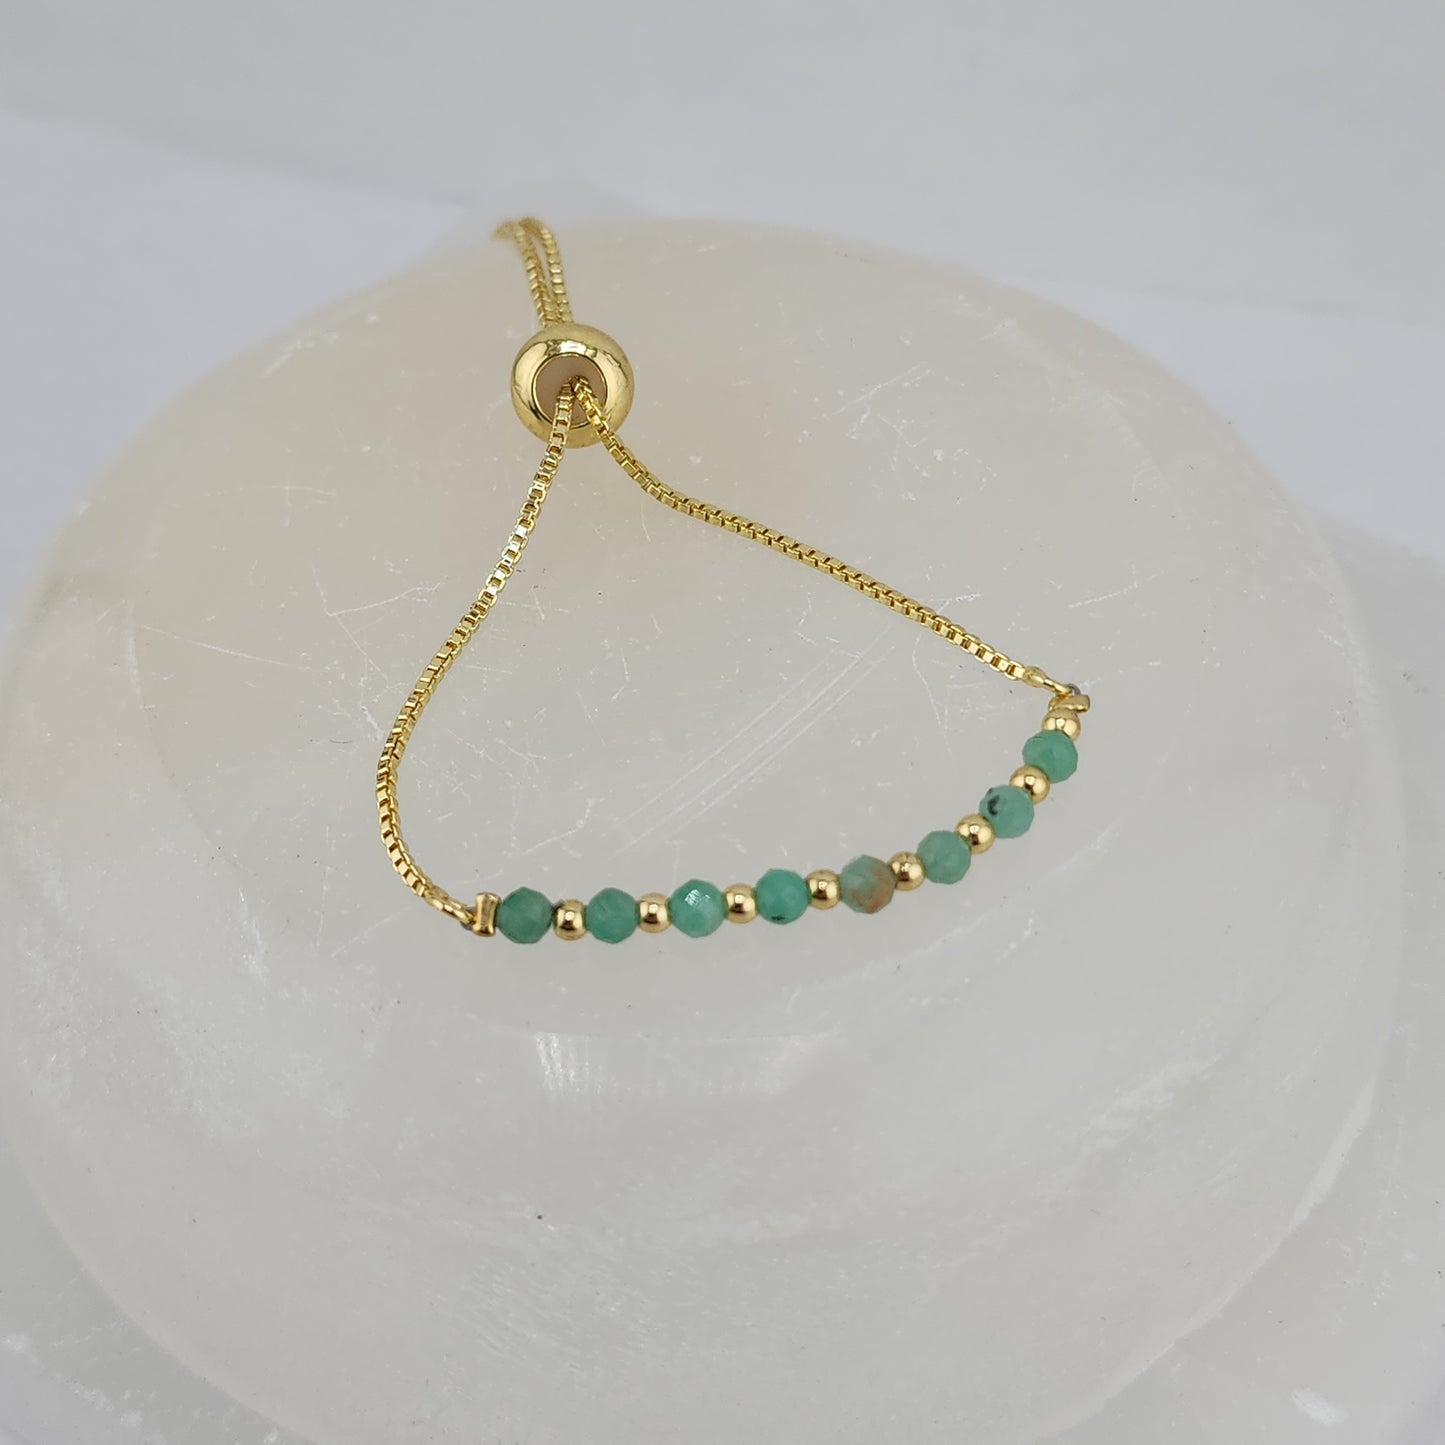 Adjustable Golden Emerald Bracelets